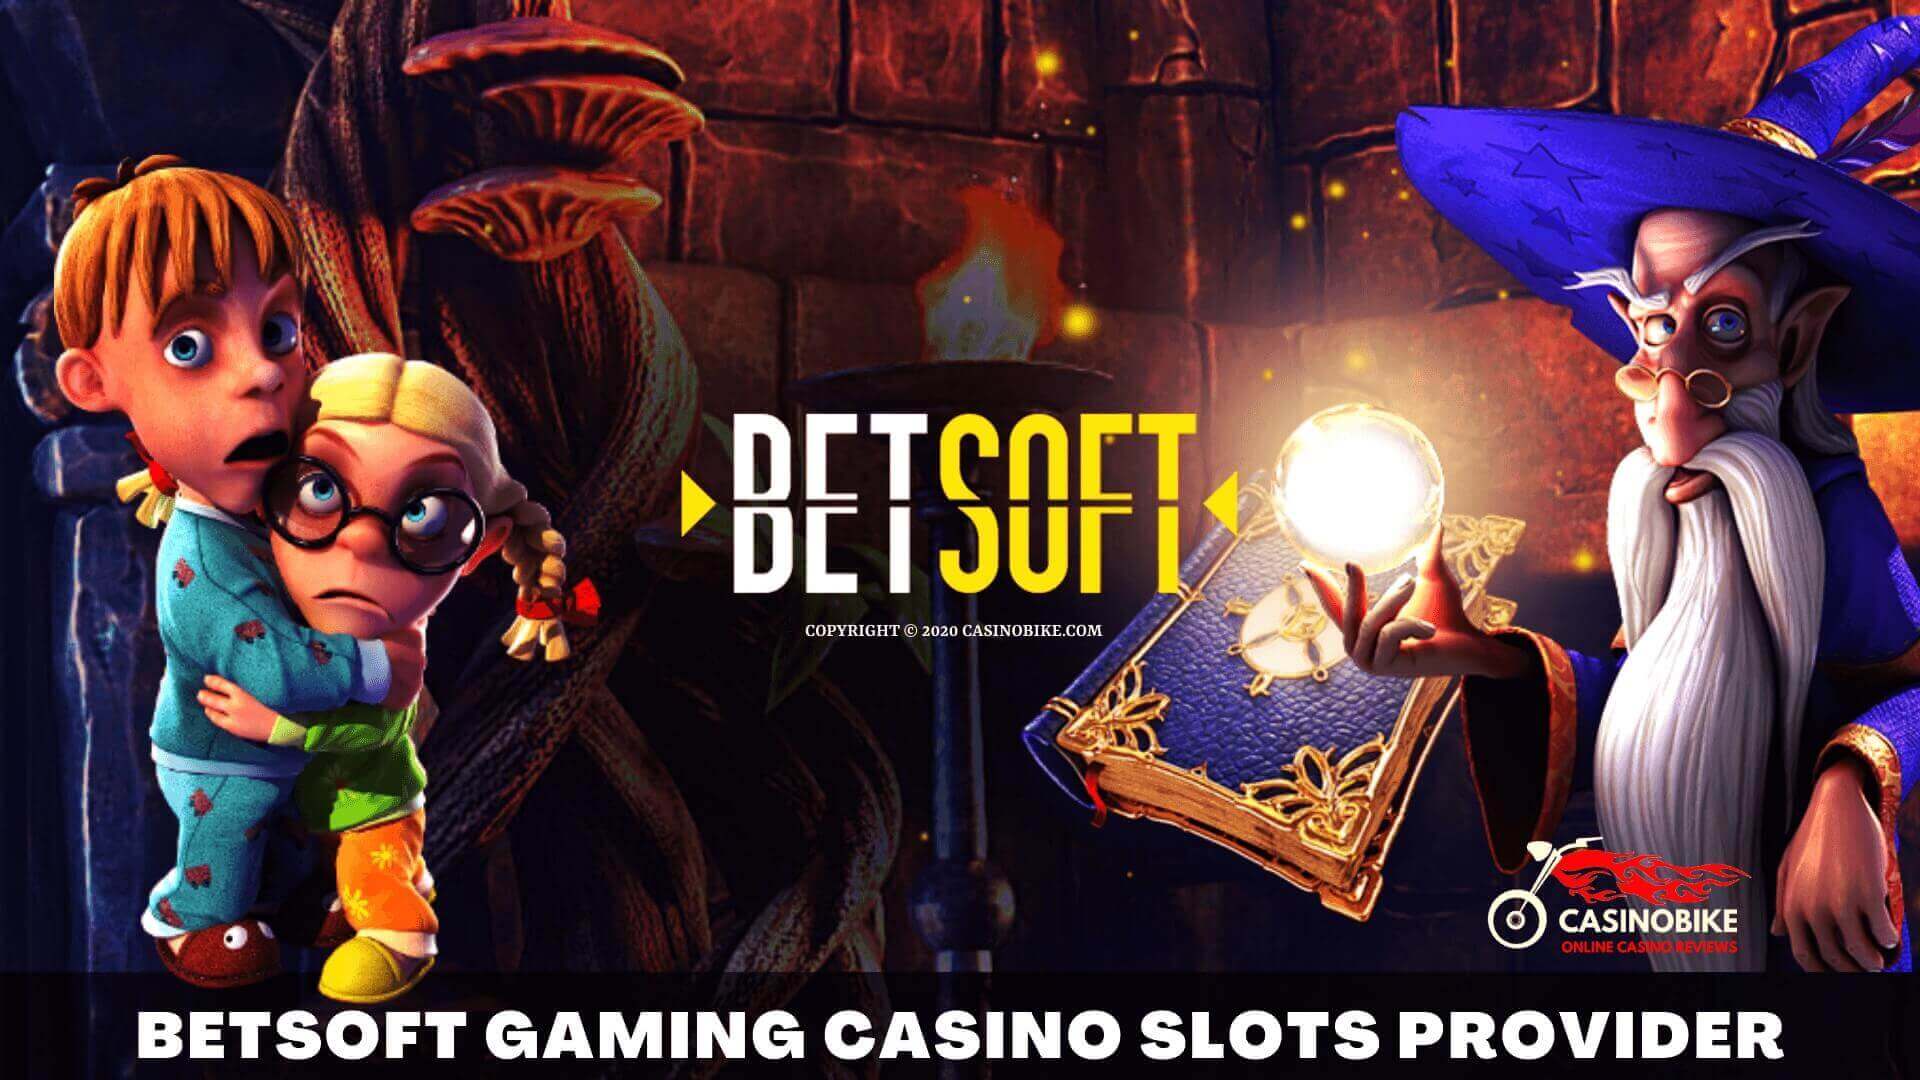 BetSoft Gaming Casino Slots Provider